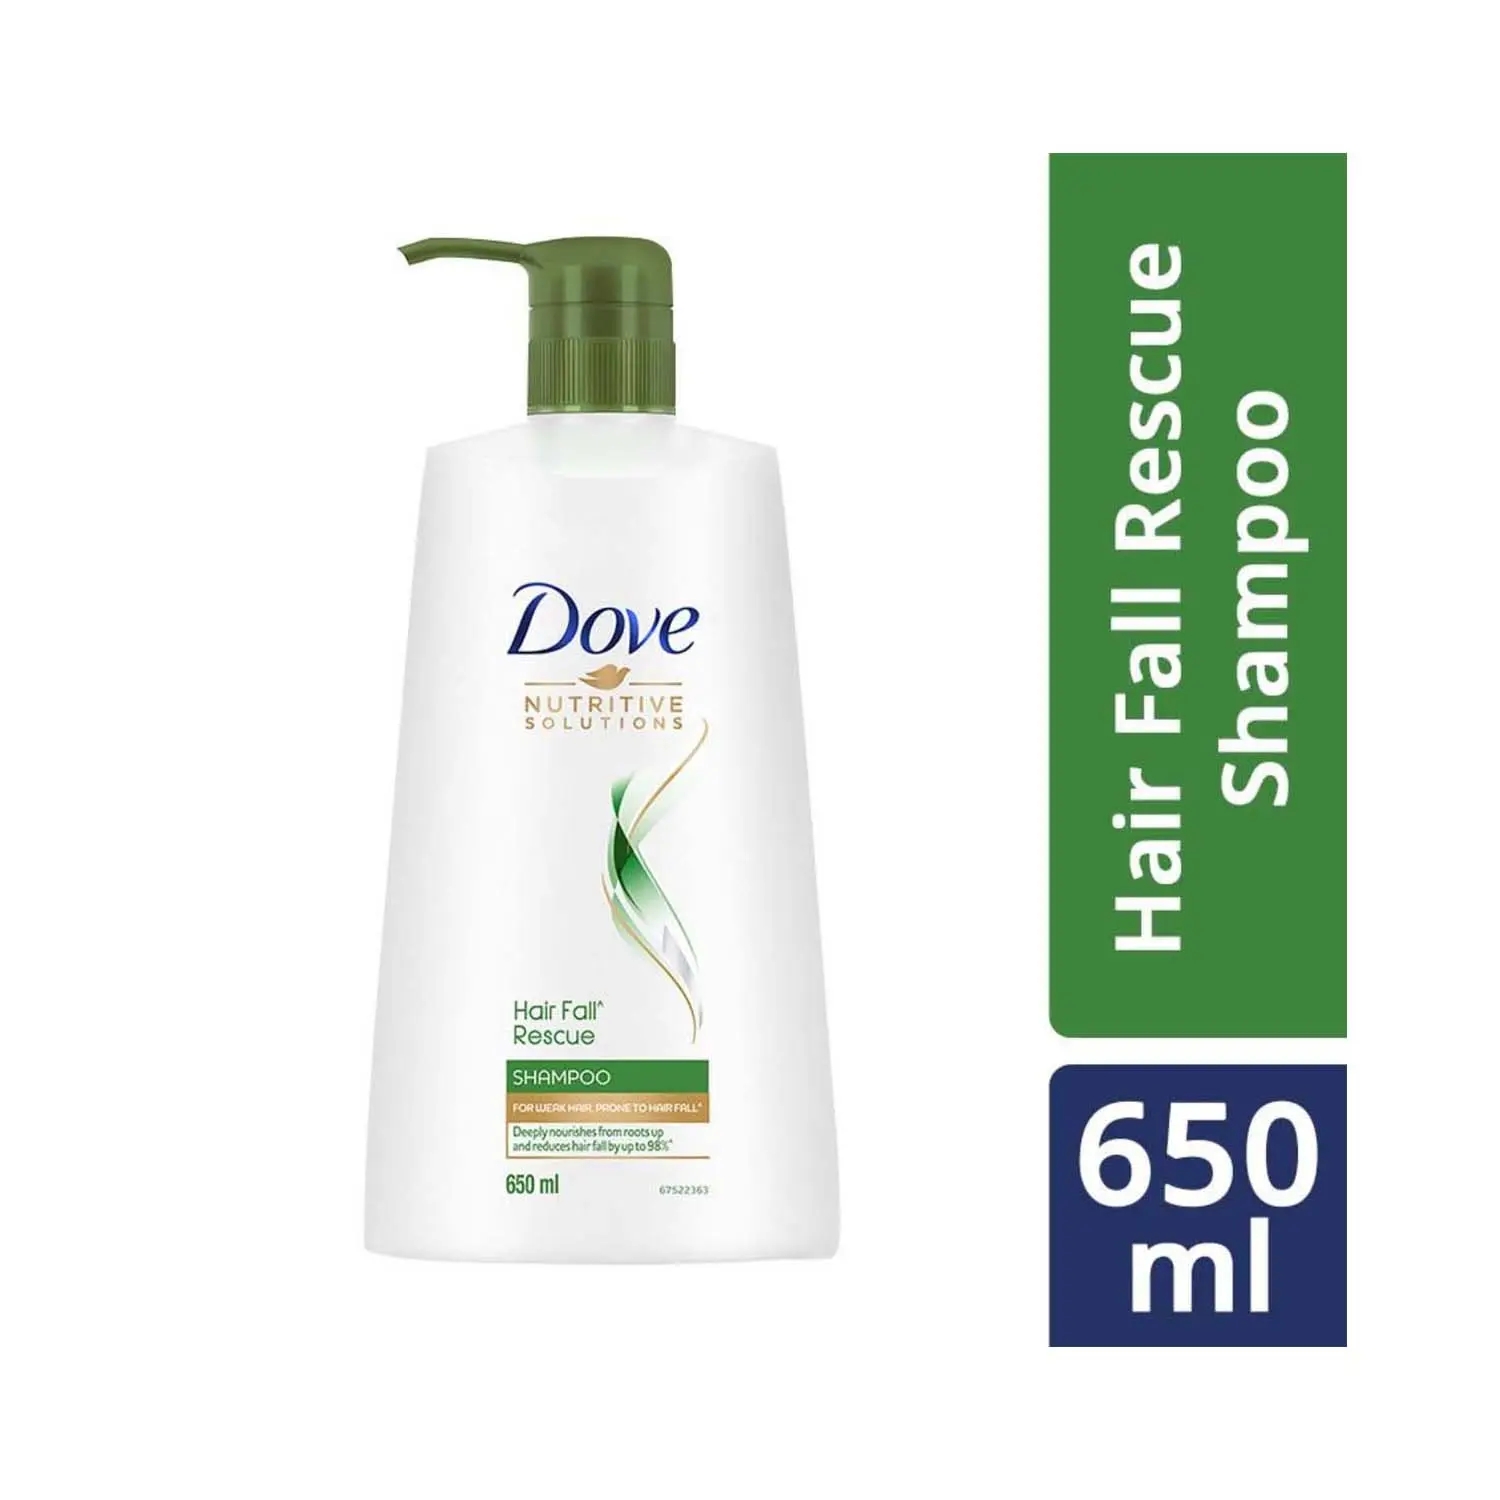 Dove | Dove Hair Fall Rescue Hair Shampoo (650ml)